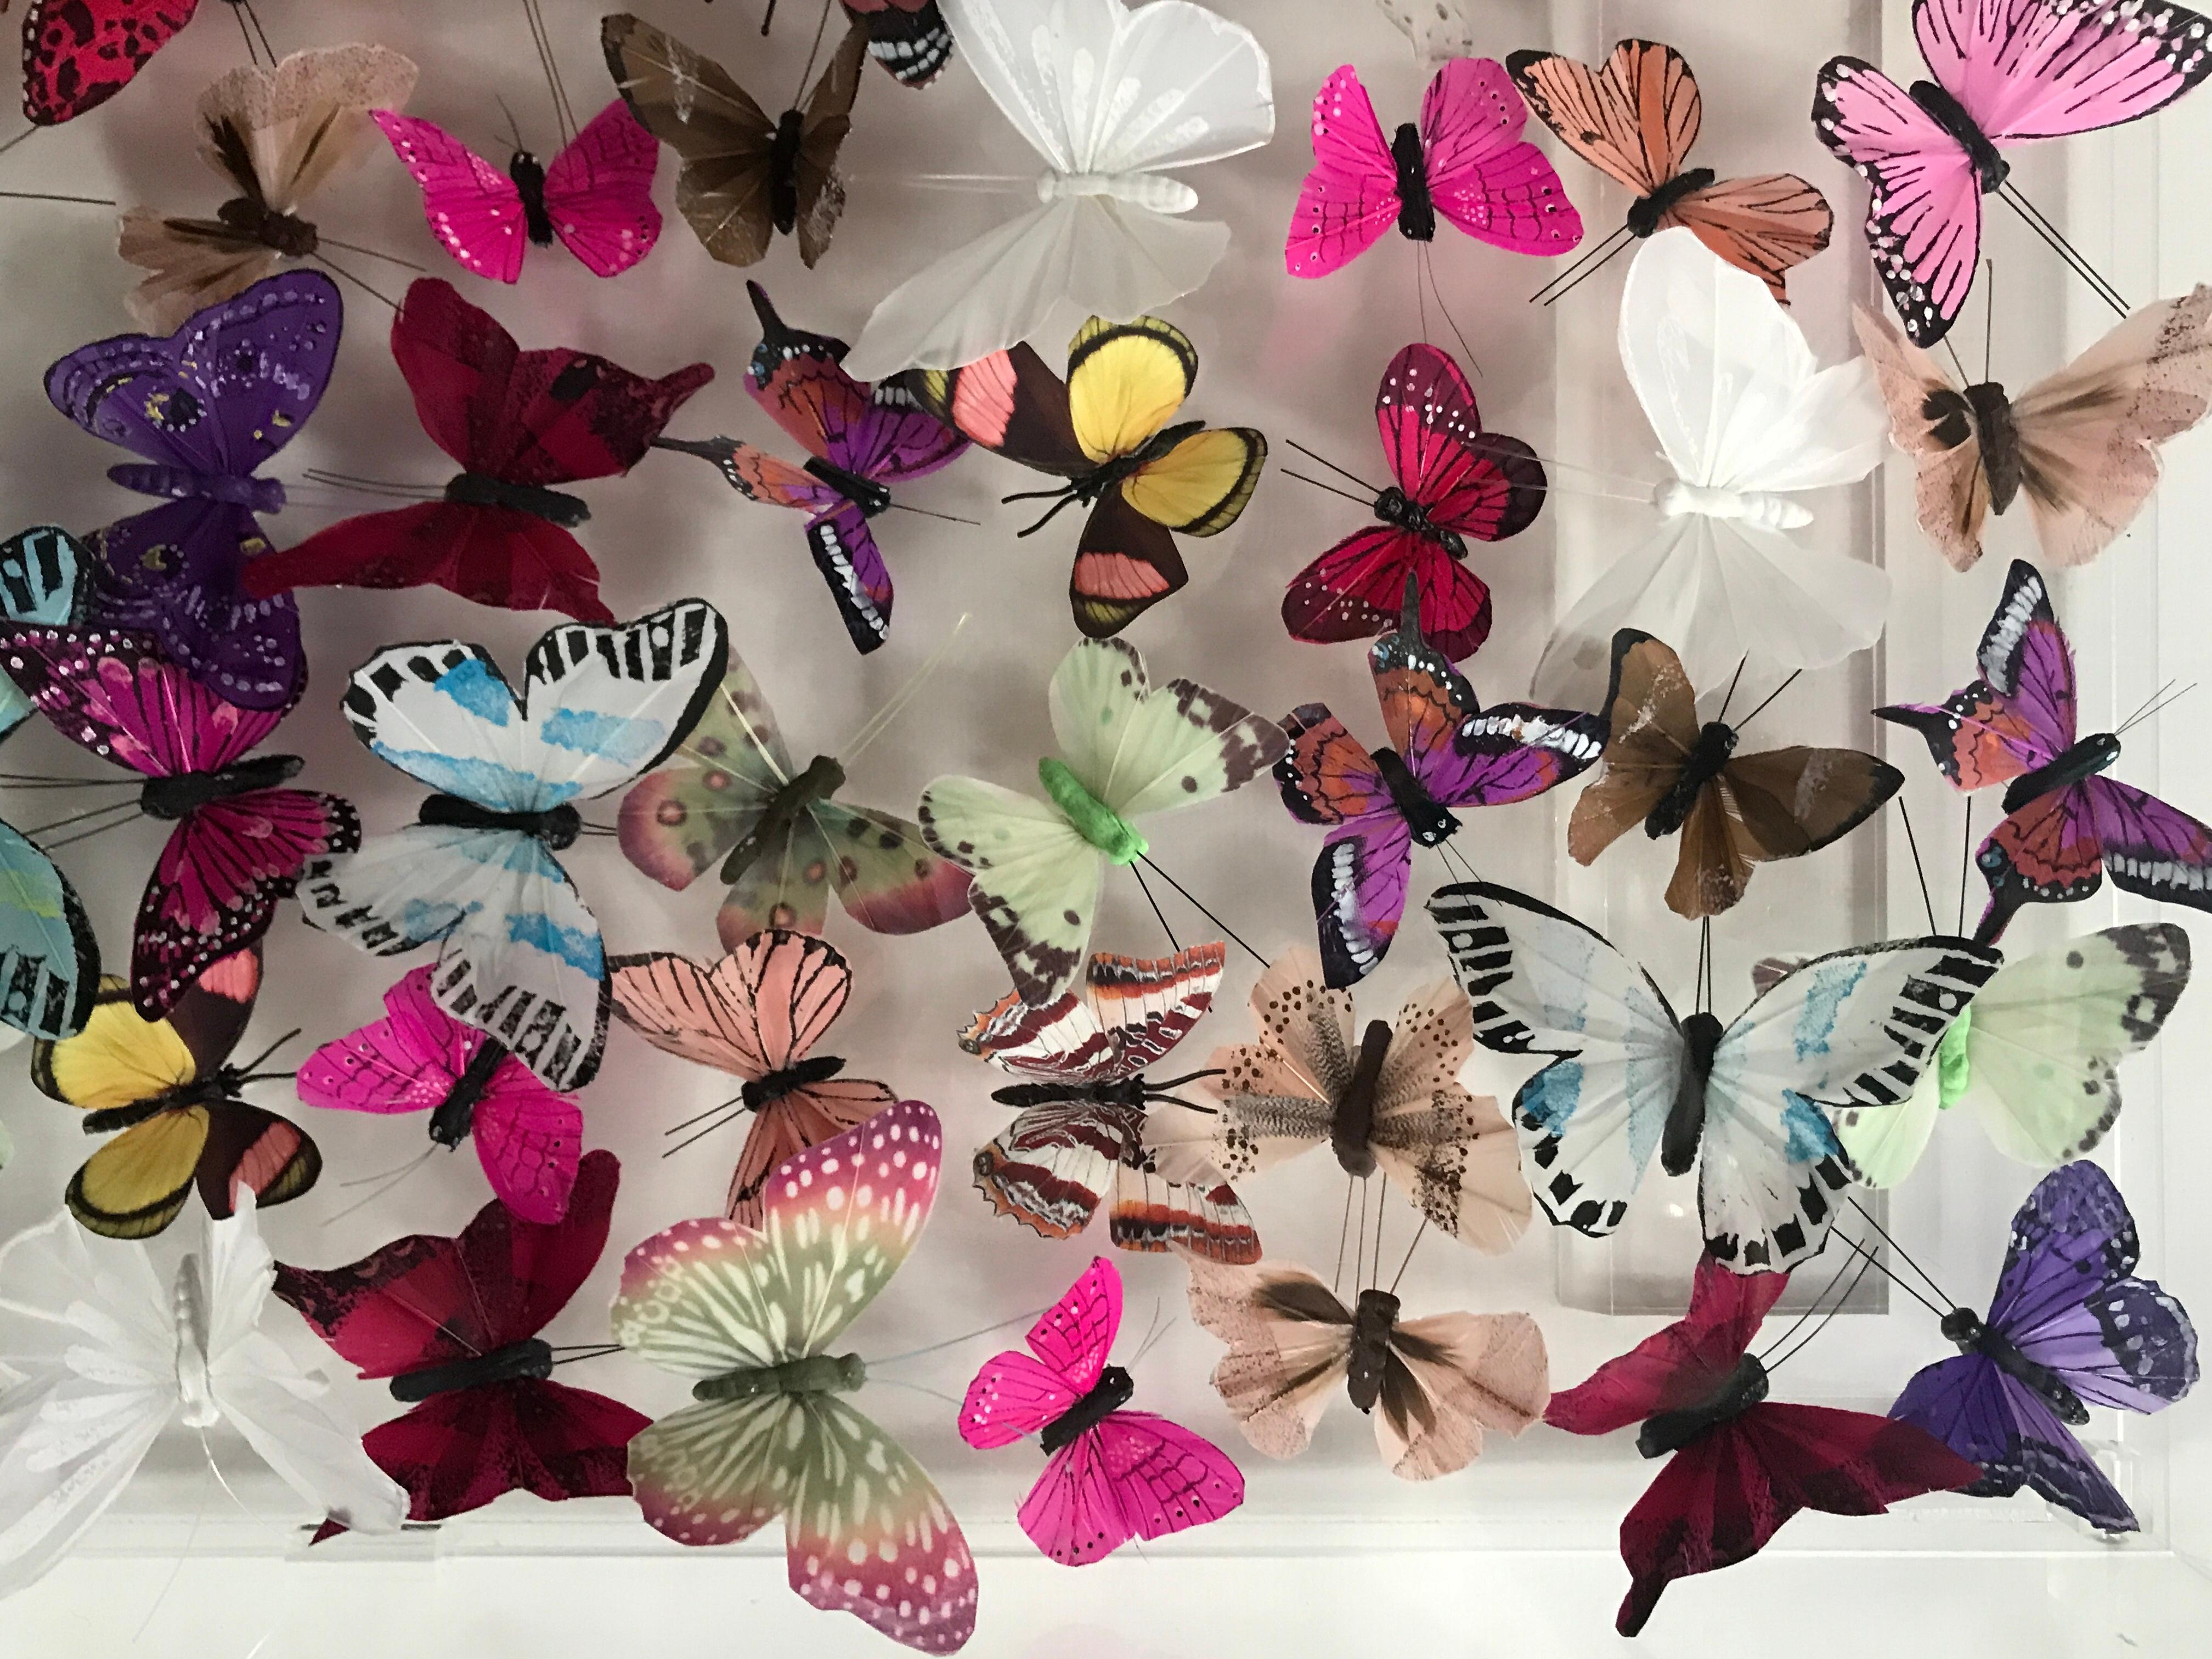 Melange II est une œuvre originale de Michael Olsen. Les couleurs vives et audacieuses des papillons en font une pièce joyeuse. L'utilisation du plexiglas par Olsen permet à ses œuvres de s'intégrer élégamment dans n'importe quel intérieur.

Michael